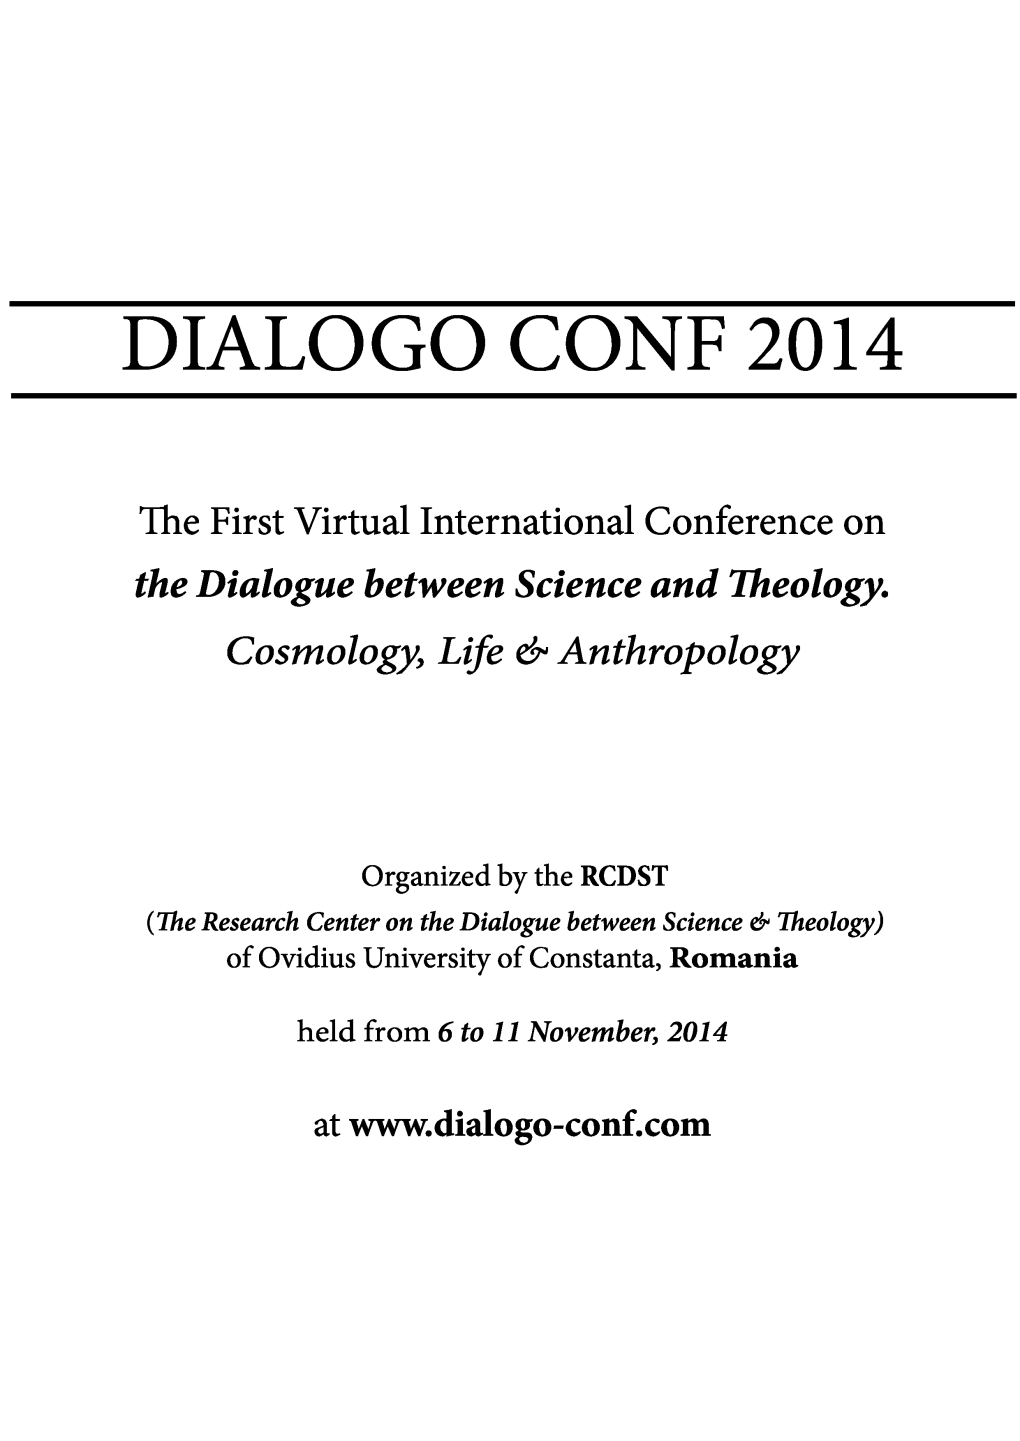 Dialogo Conf 2014